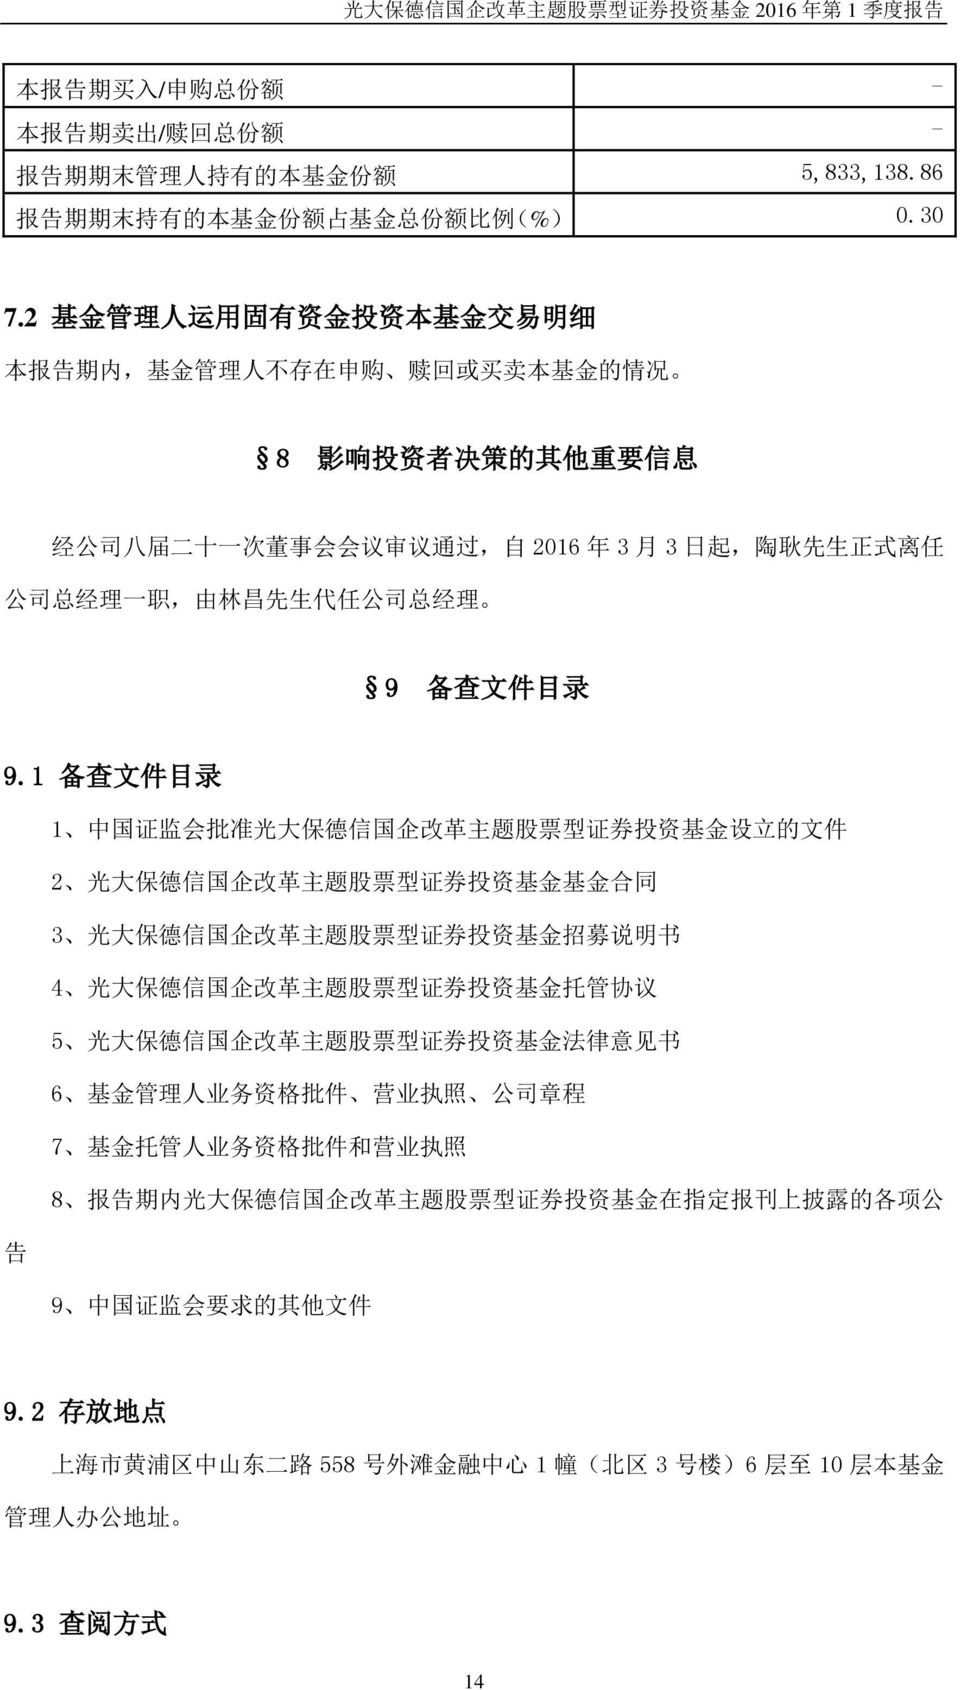 司 总 经 理 一 职, 由 林 昌 先 生 代 任 公 司 总 经 理 9 备 查 文 件 目 录 9.